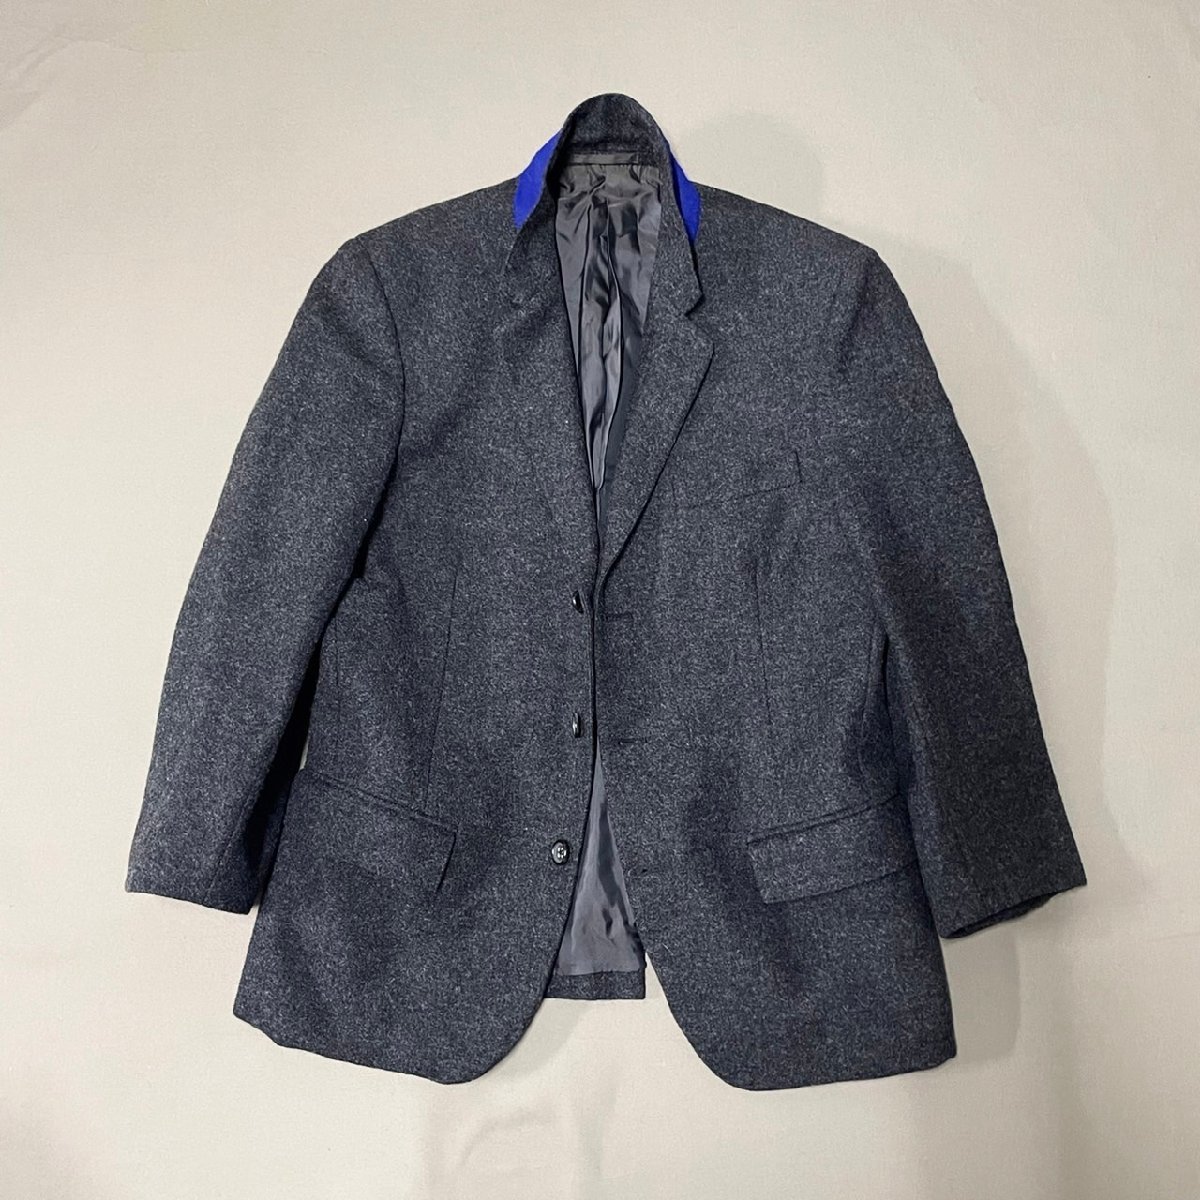 激安売店 JIL SANDER 2021SS ウールジャケット サイズ48 テーラードジャケット